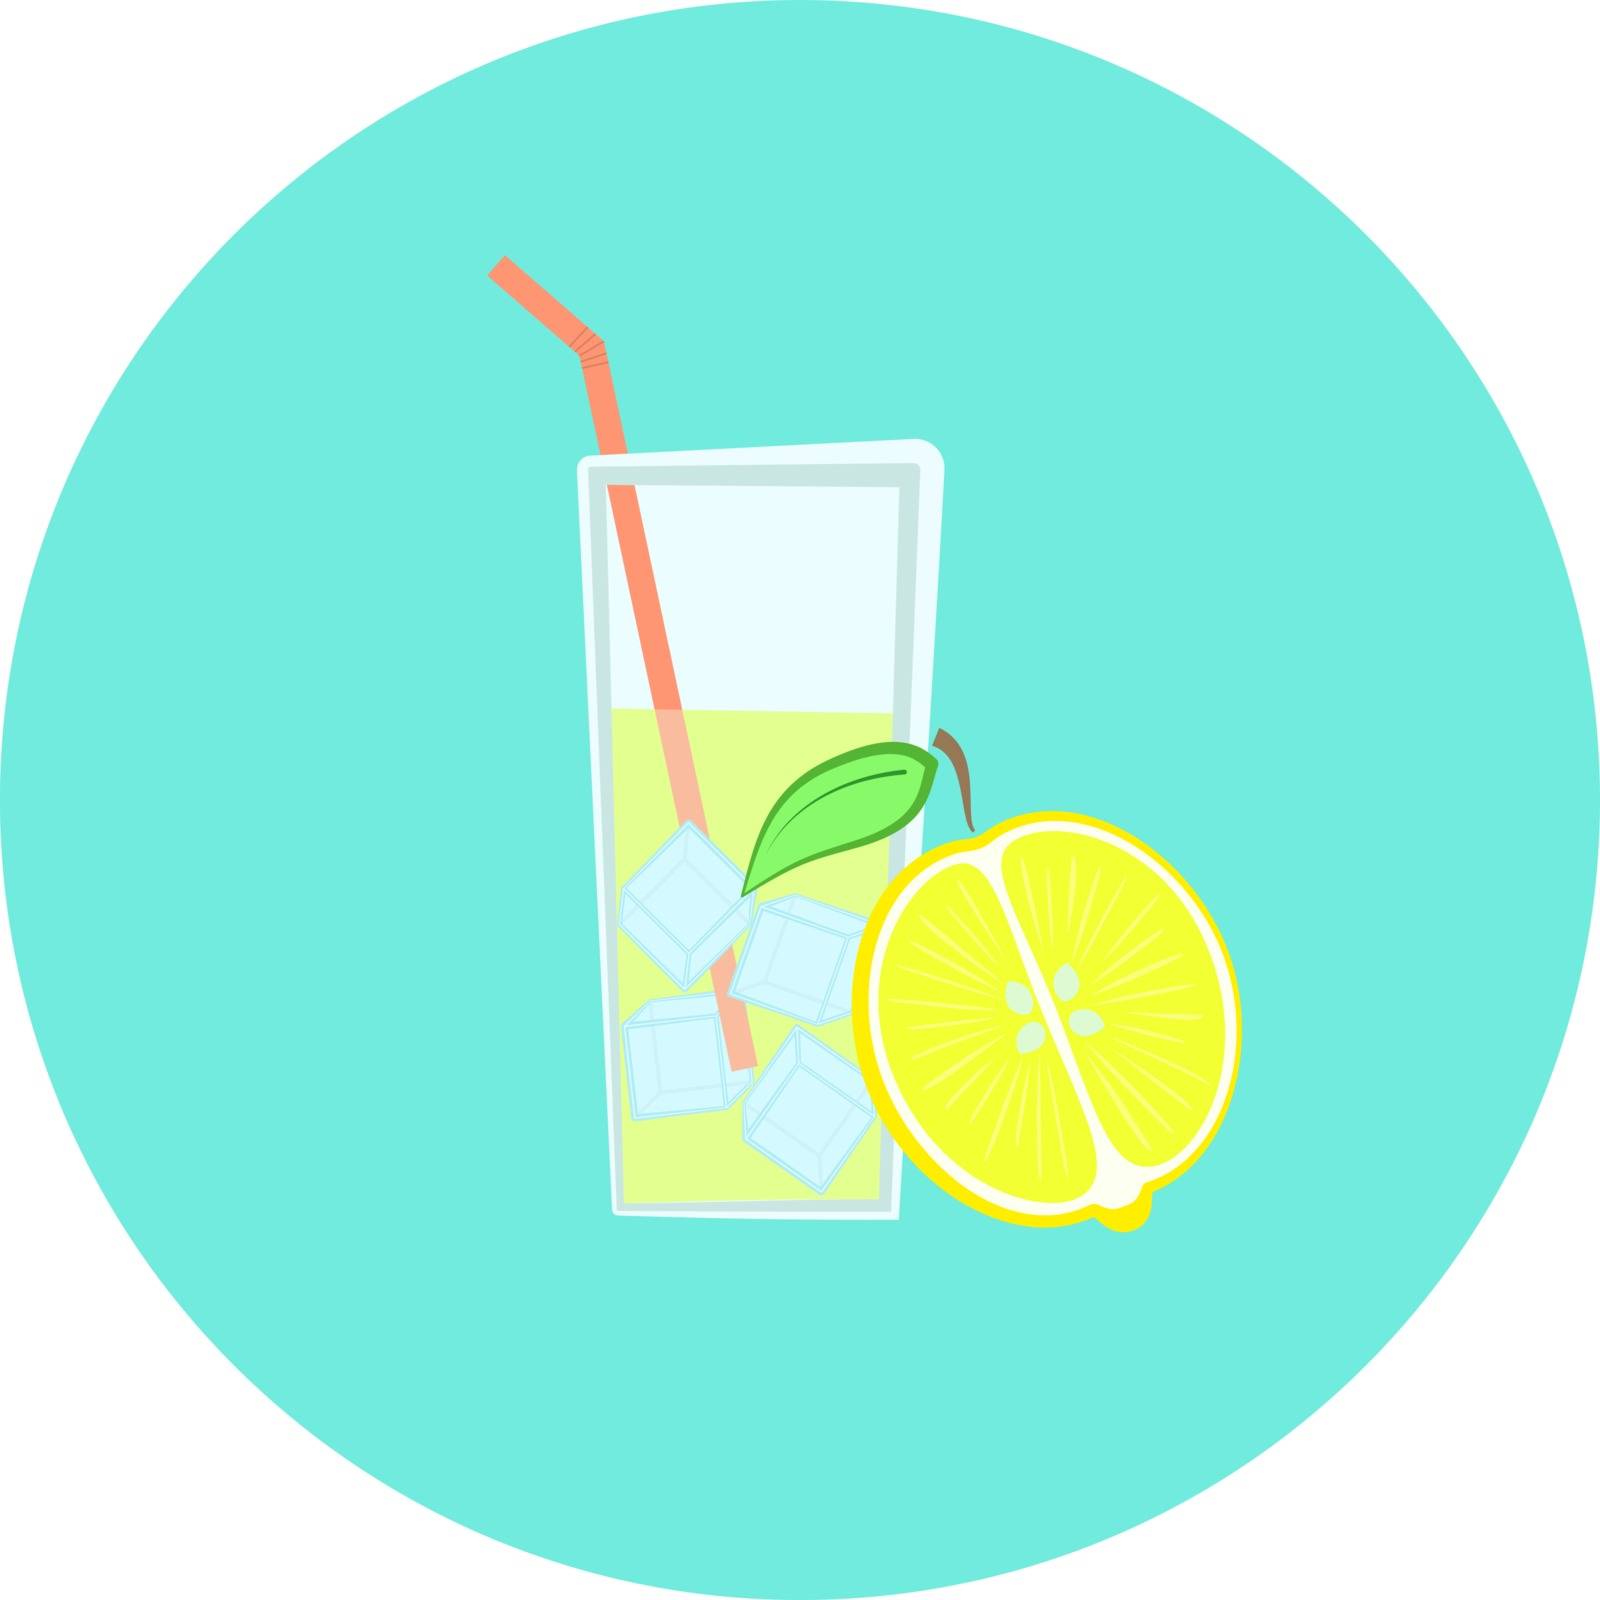 Glass of fresh yellow lemonade with ice icon, lemon fruit